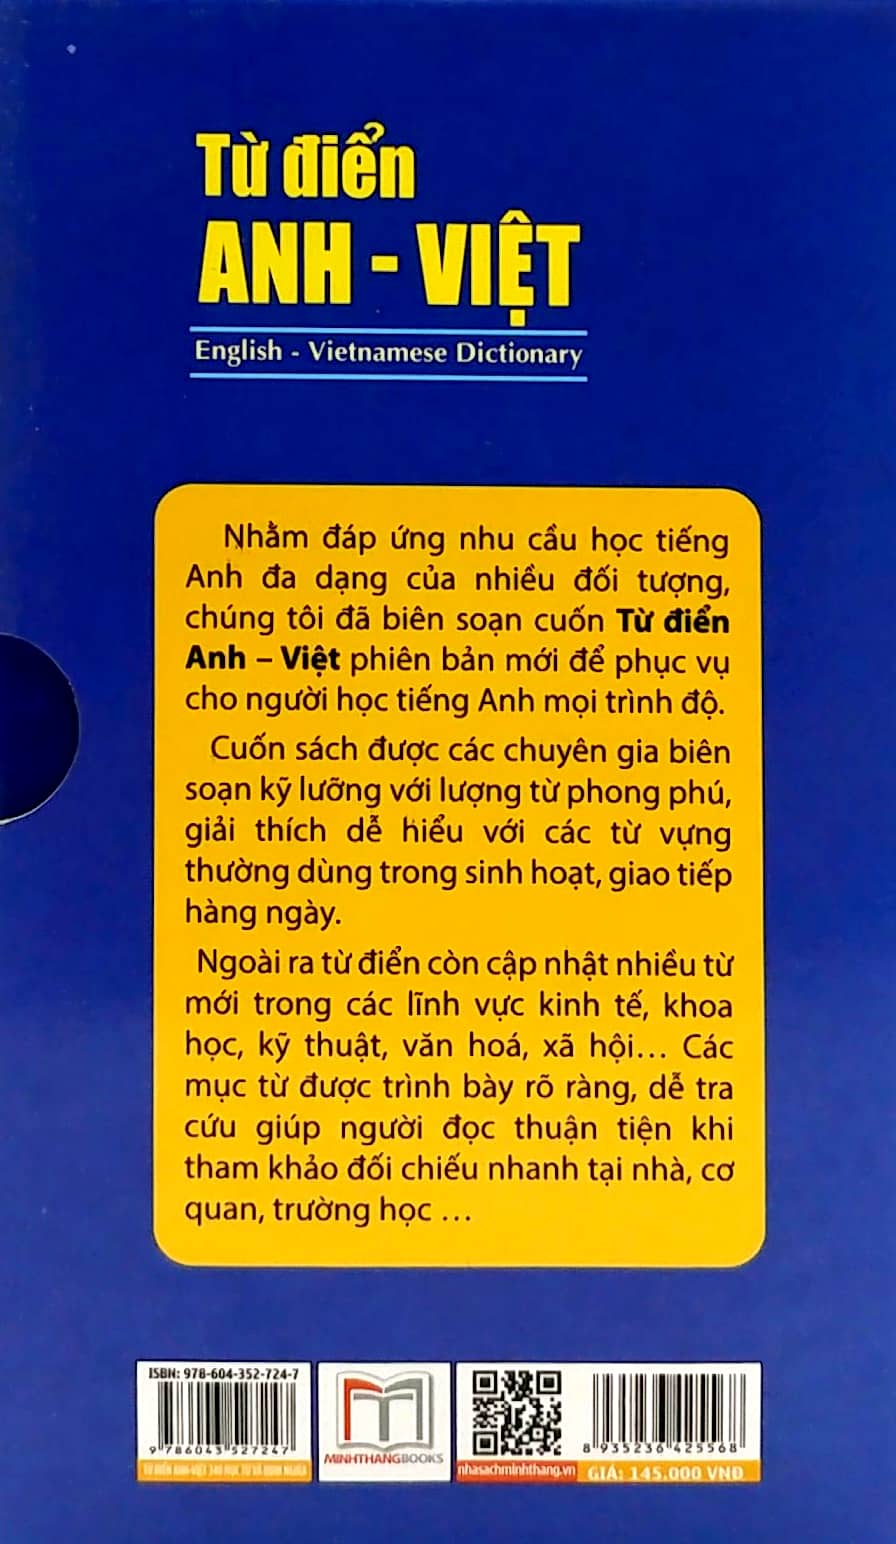 Từ Điển Anh - Việt 340.000 Mục Từ Và Định Nghĩa PDF